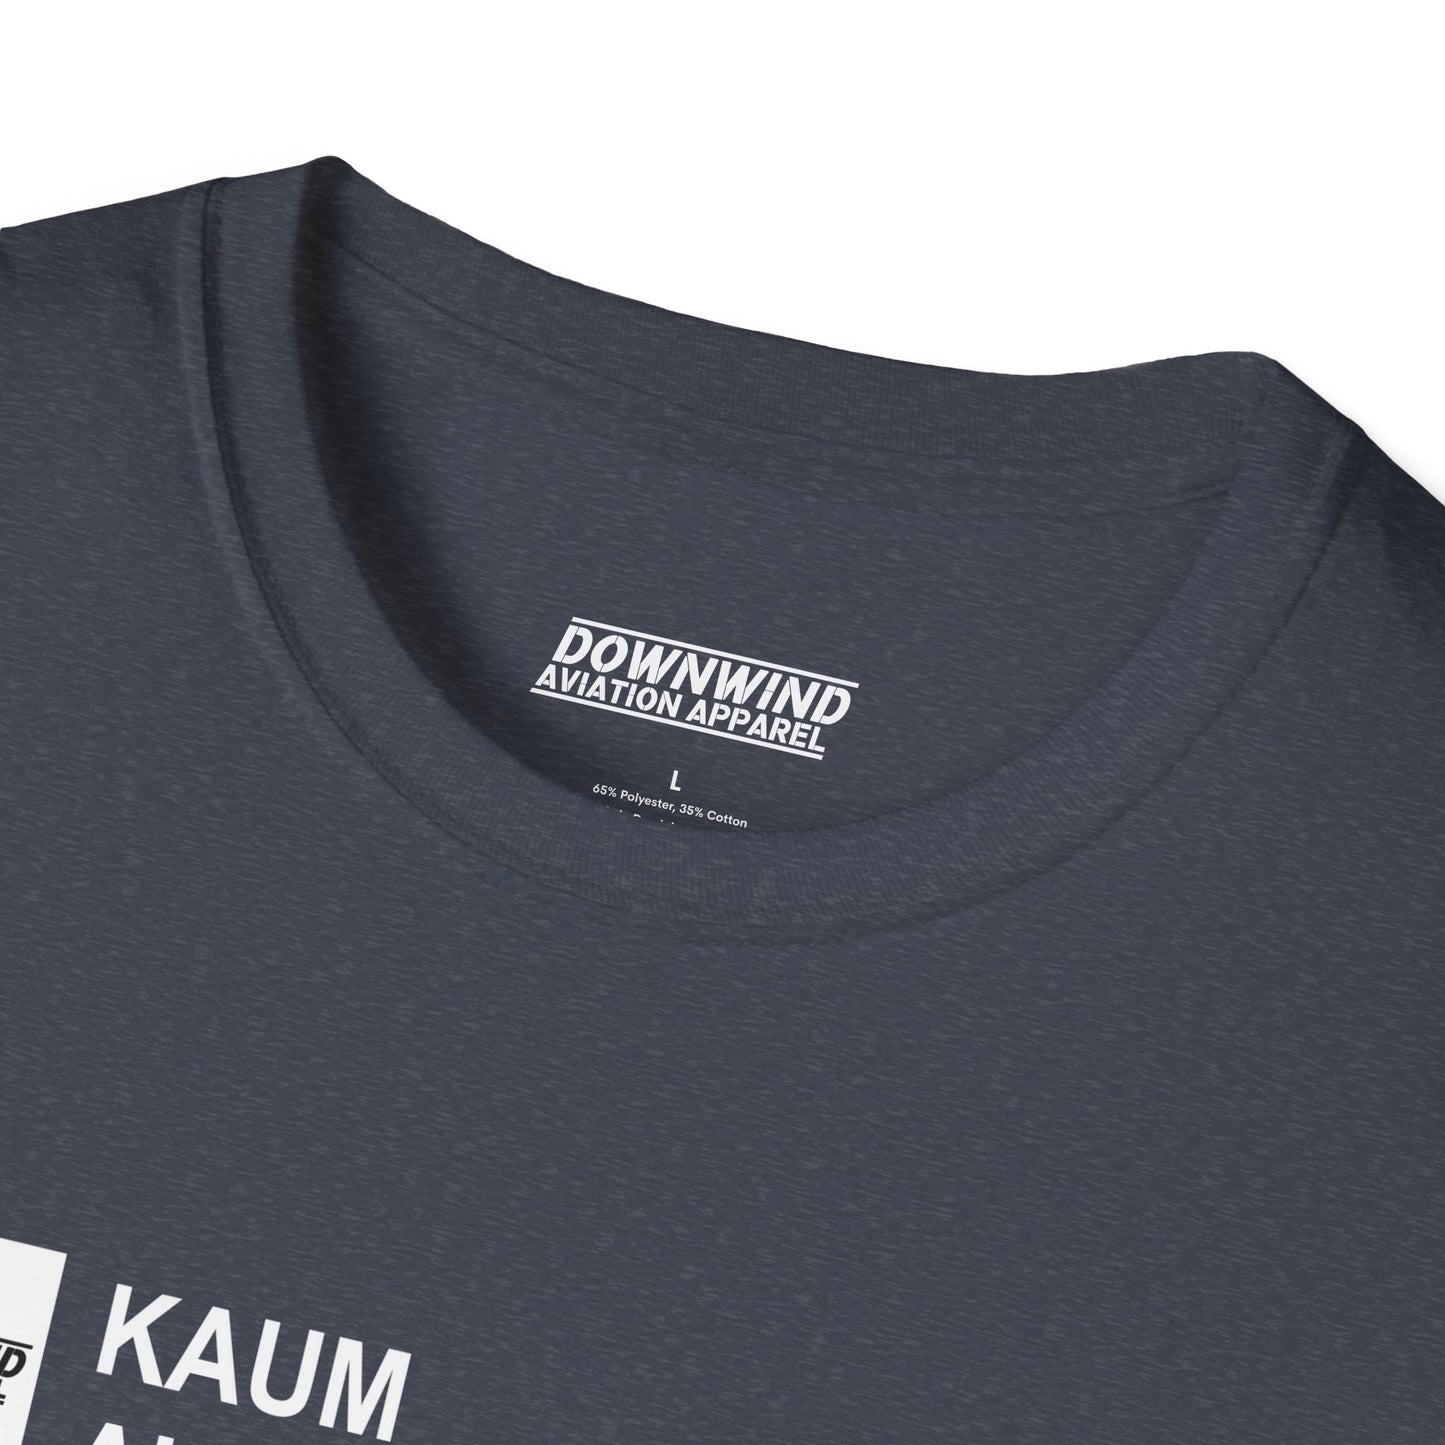 KAUM / Austin Muni. T-Shirt